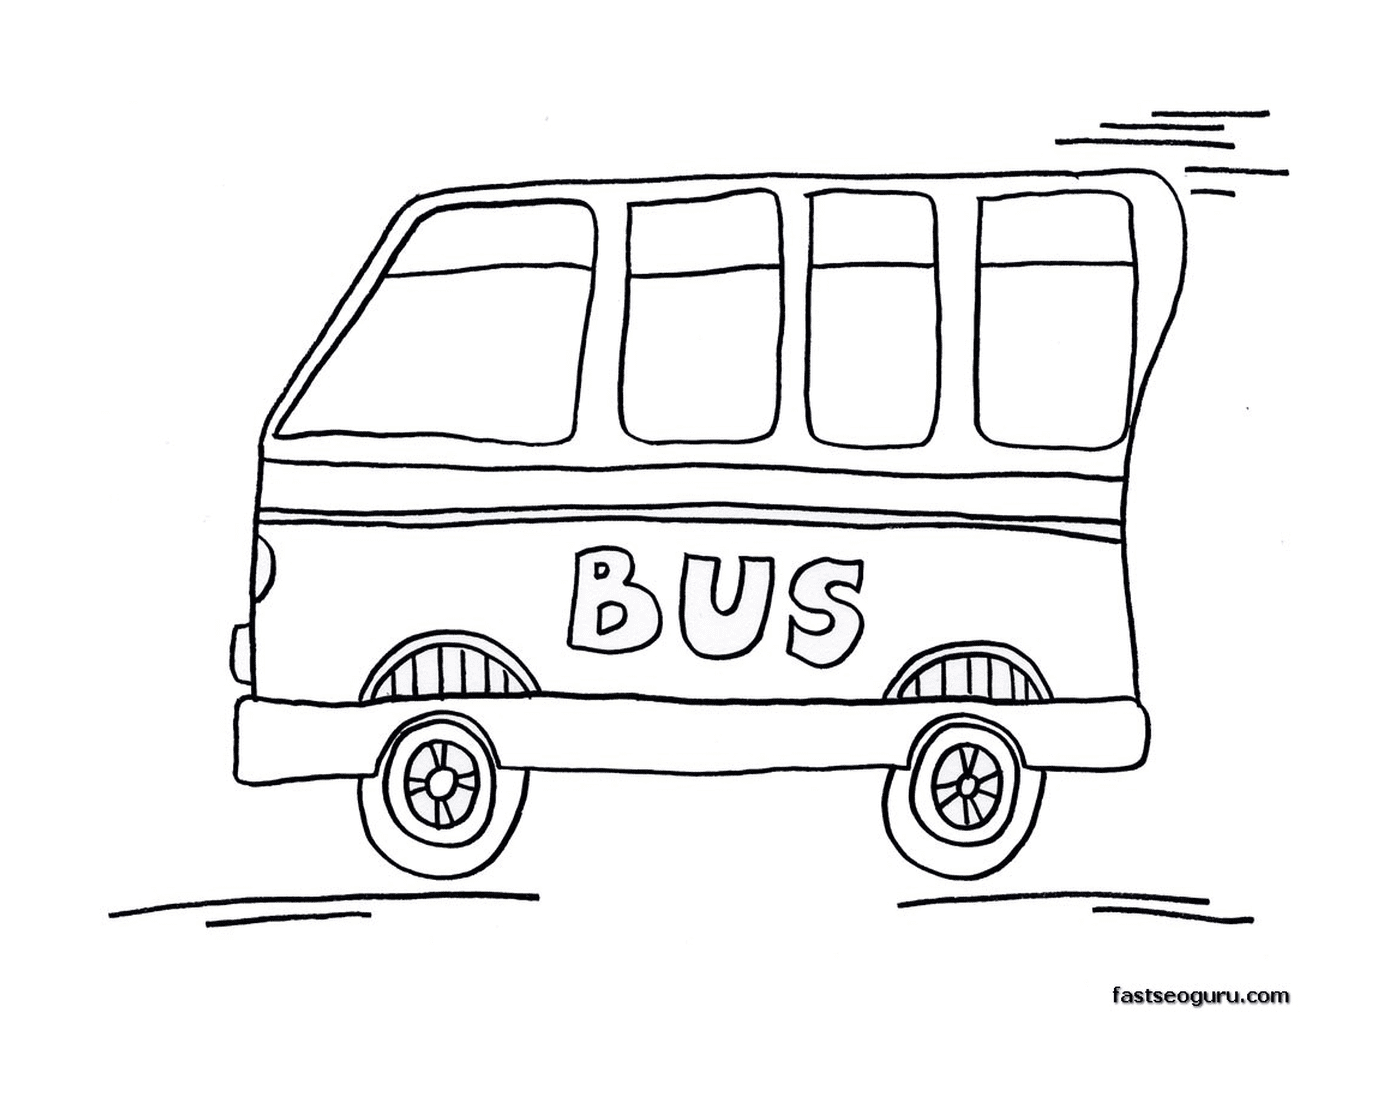  路上有辆巴士 